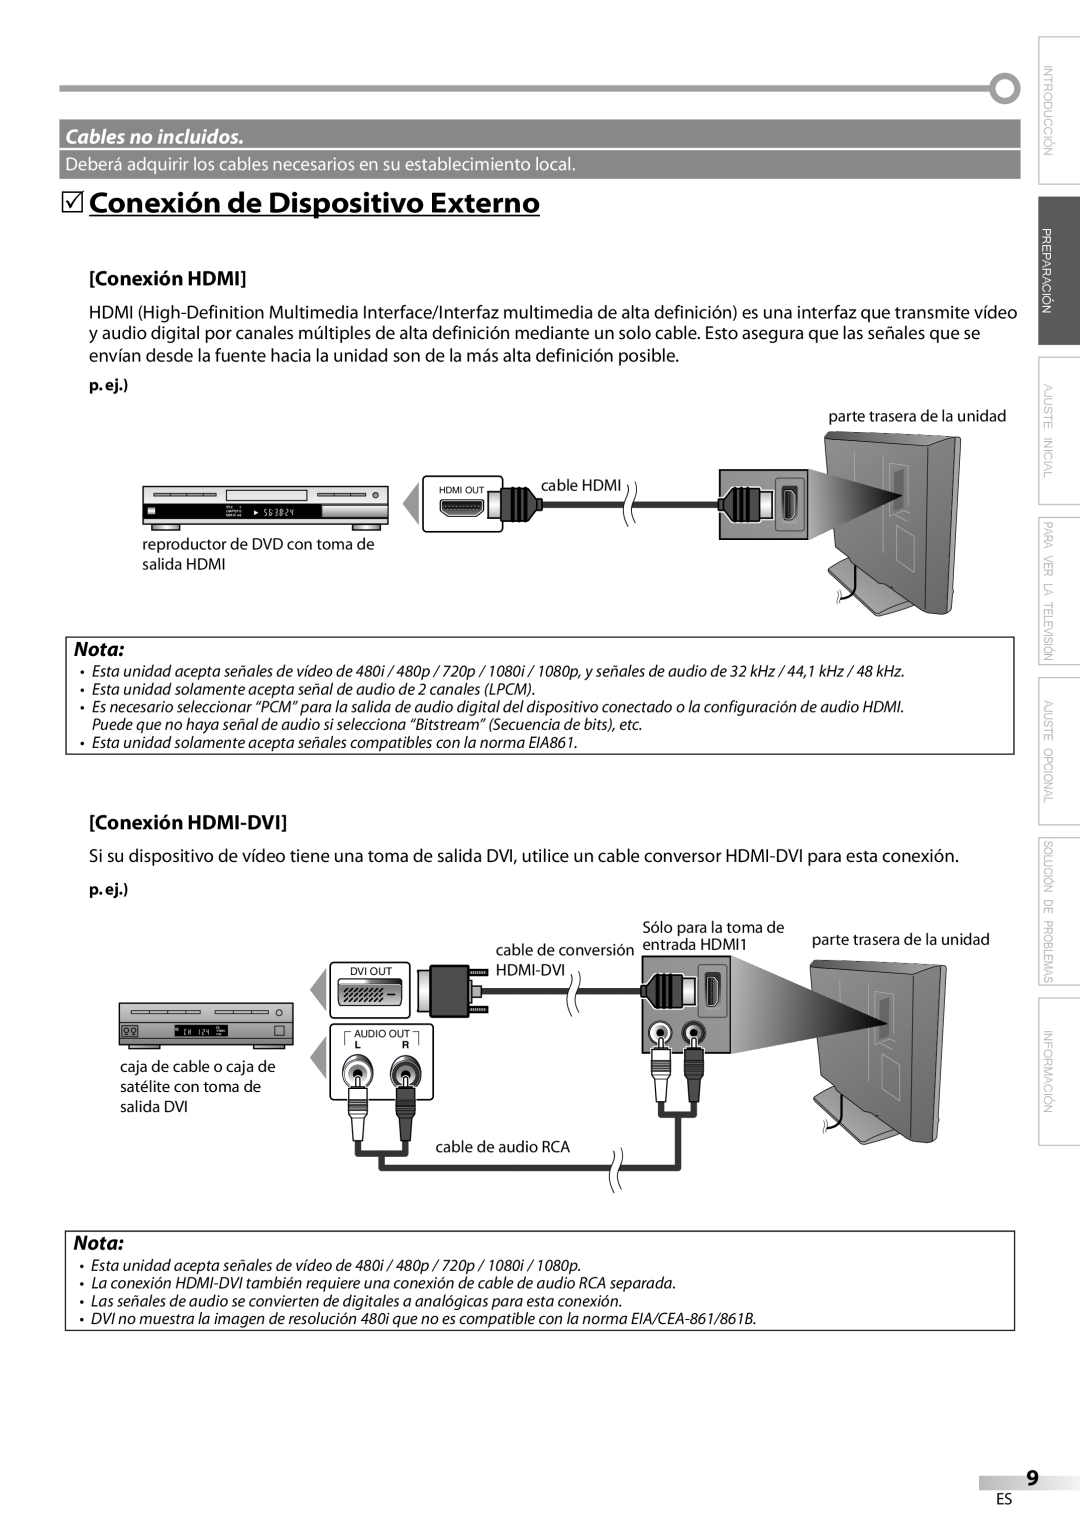 Emerson LC420EM8 owner manual 5Conexión de Dispositivo Externo, Cables no incluidos, Nota, Conexión HDMI-DVI, p. ej 